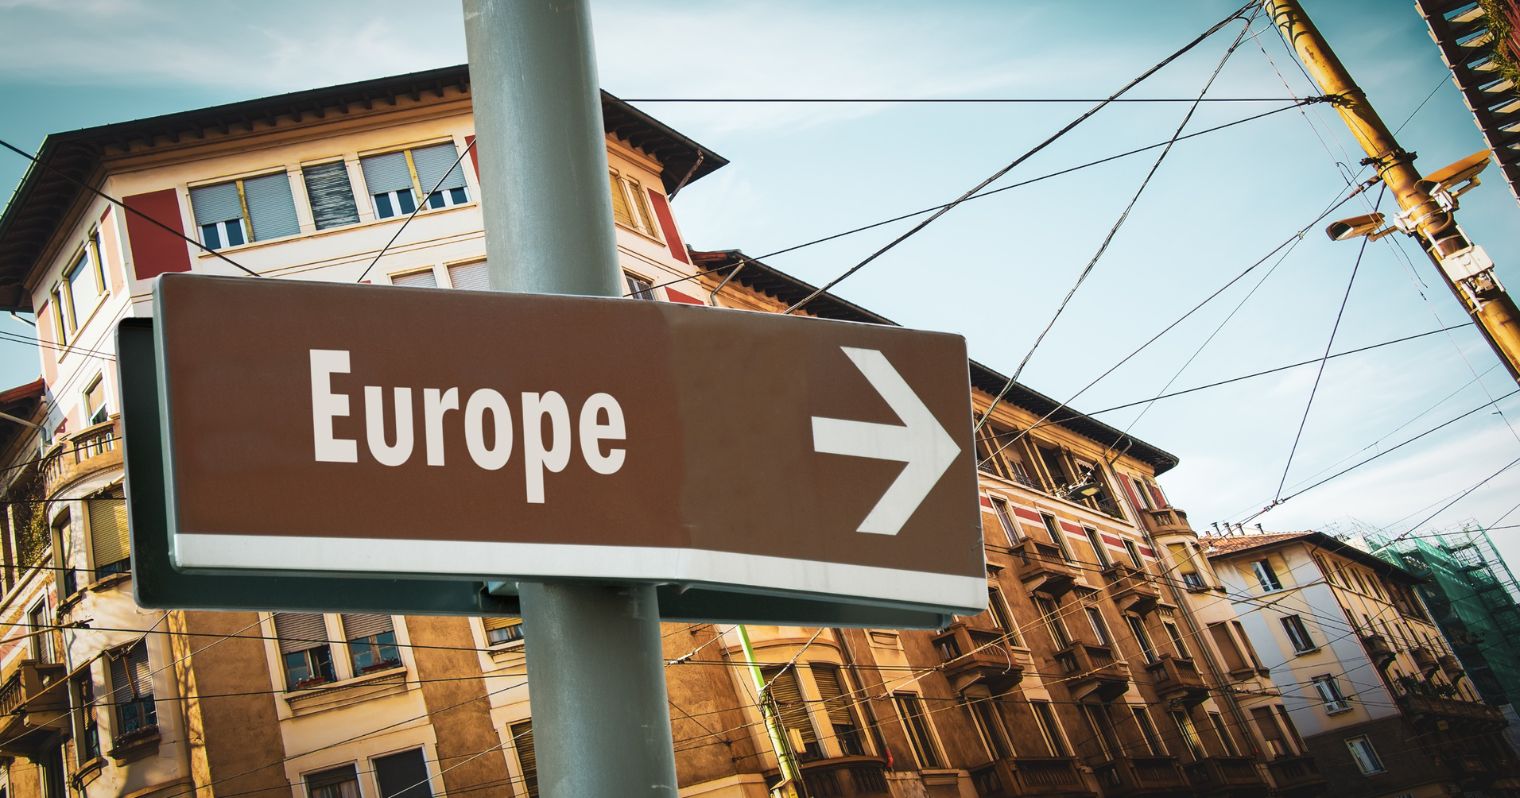 A képen egy utcarészlet látható, a kép középpontjában egy tábla látható, rajta az Európa felirat angolul, és egy nyíl